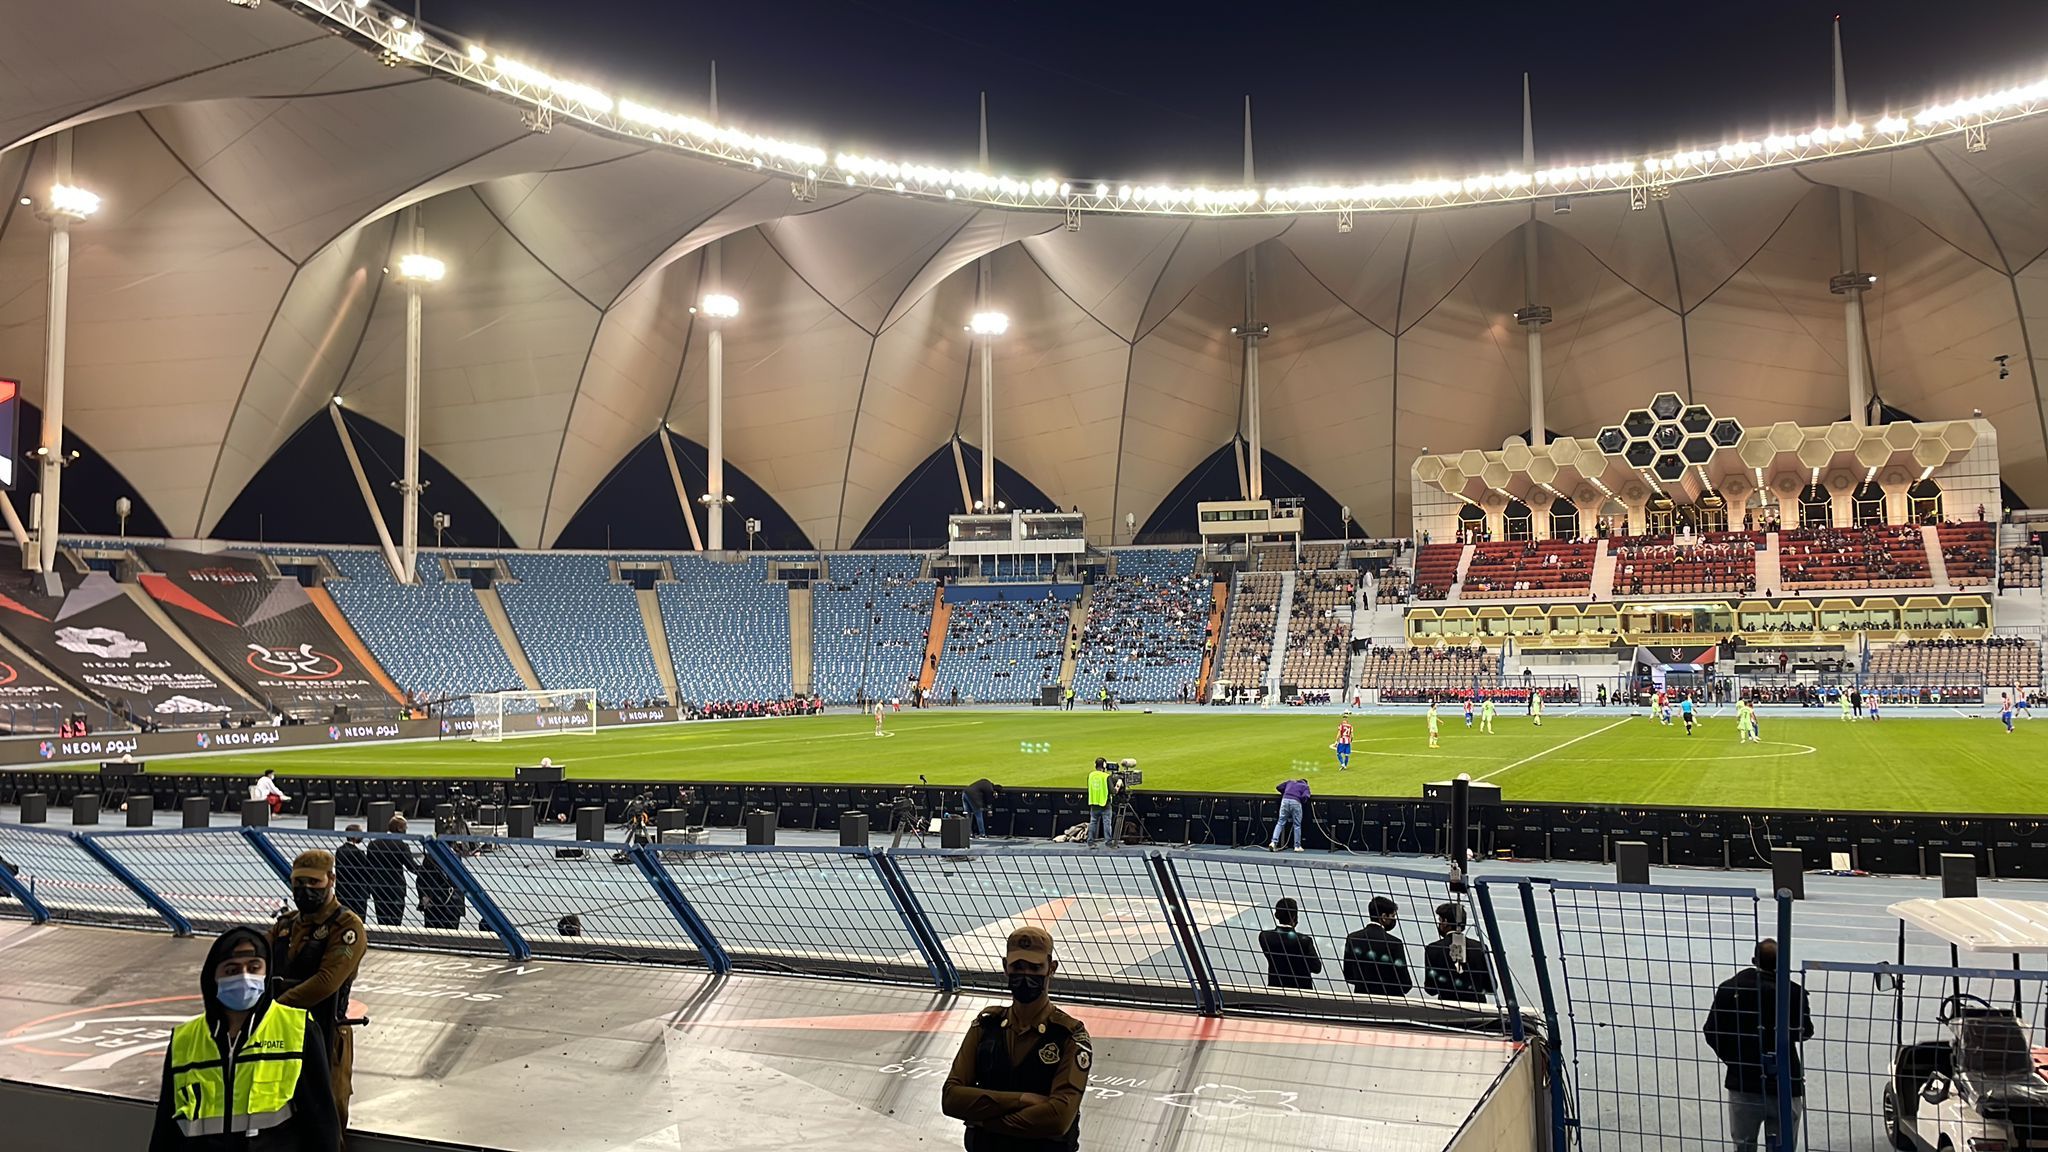 El estadio de la Supercopa en Arabia en una imagen realizada por Carlos